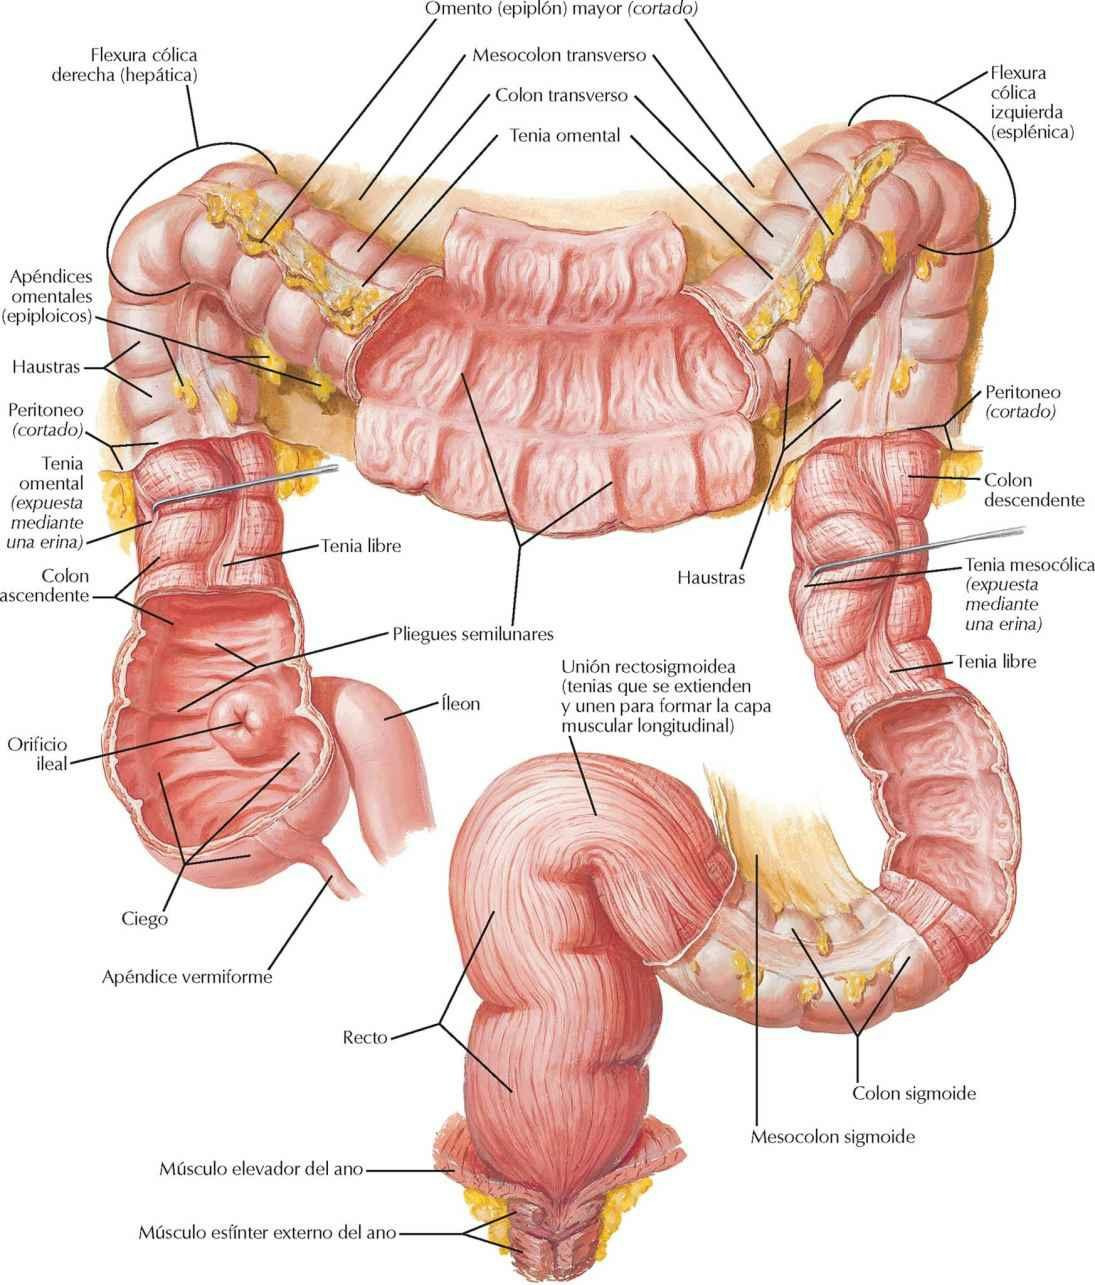 Mucosa y musculatura del intestino grueso